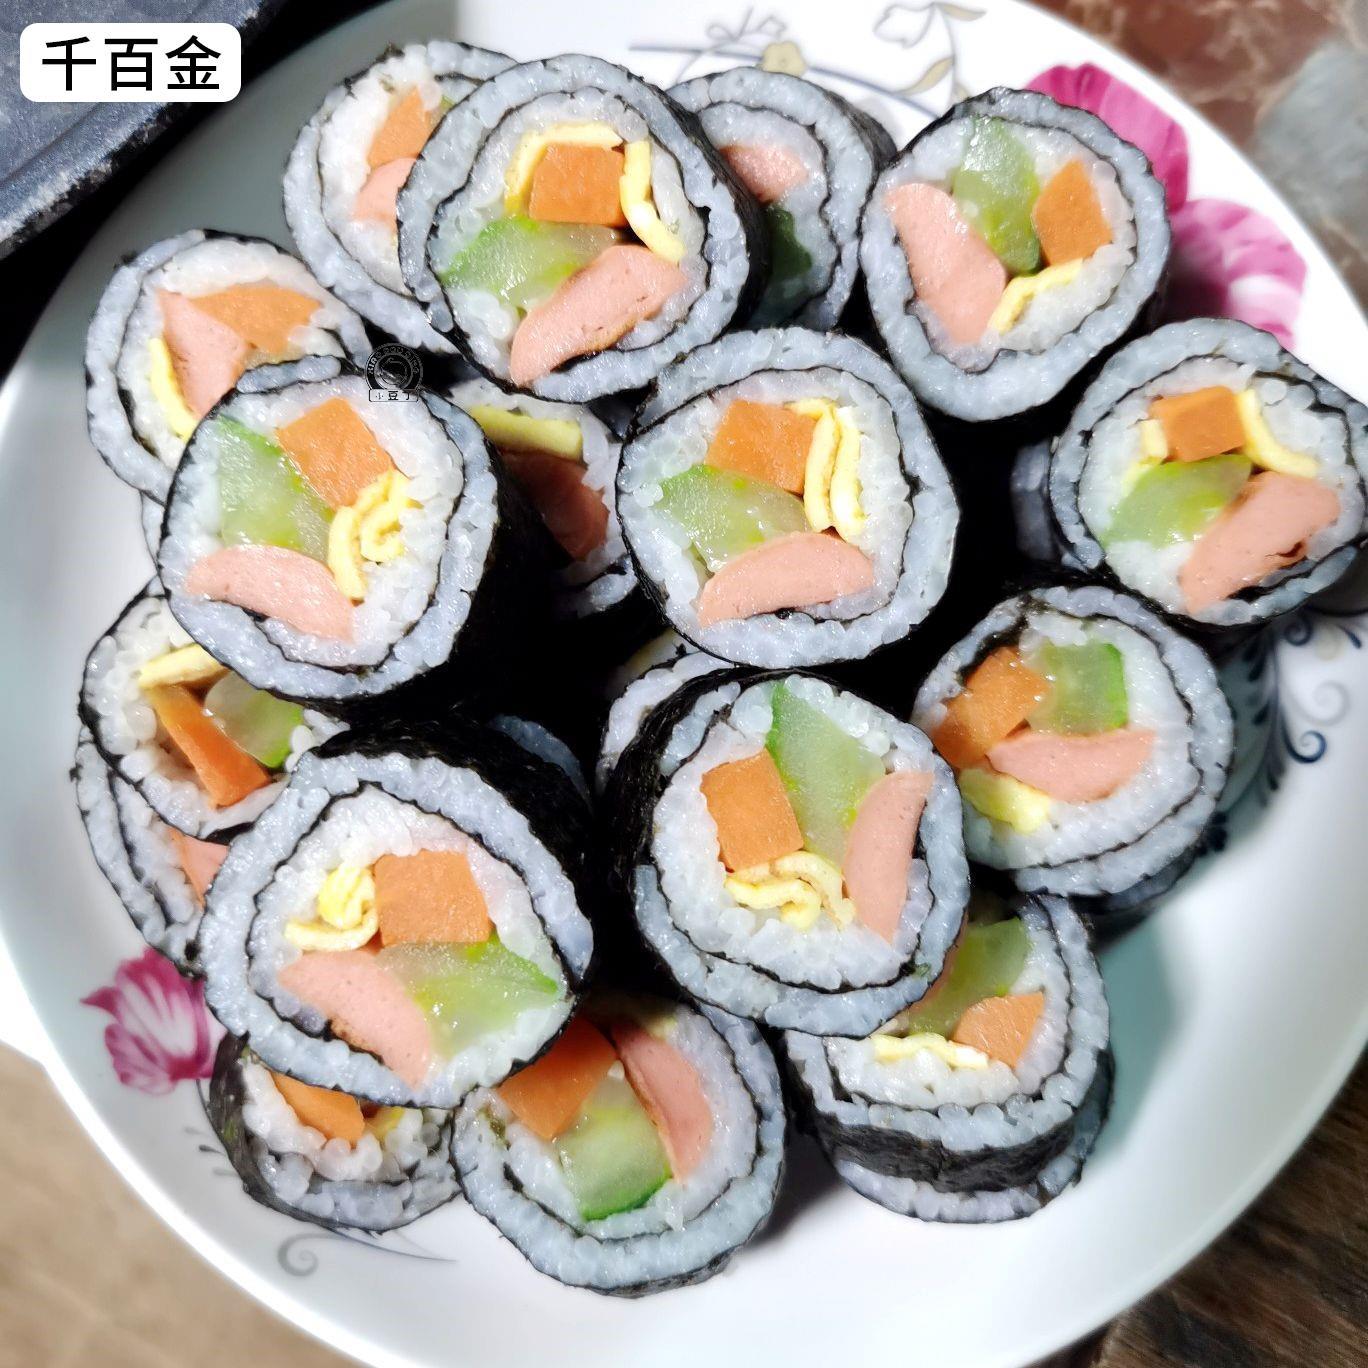 大侠寿司海苔用专大片50张做紫菜片包饭材料食材家用套装工具全套